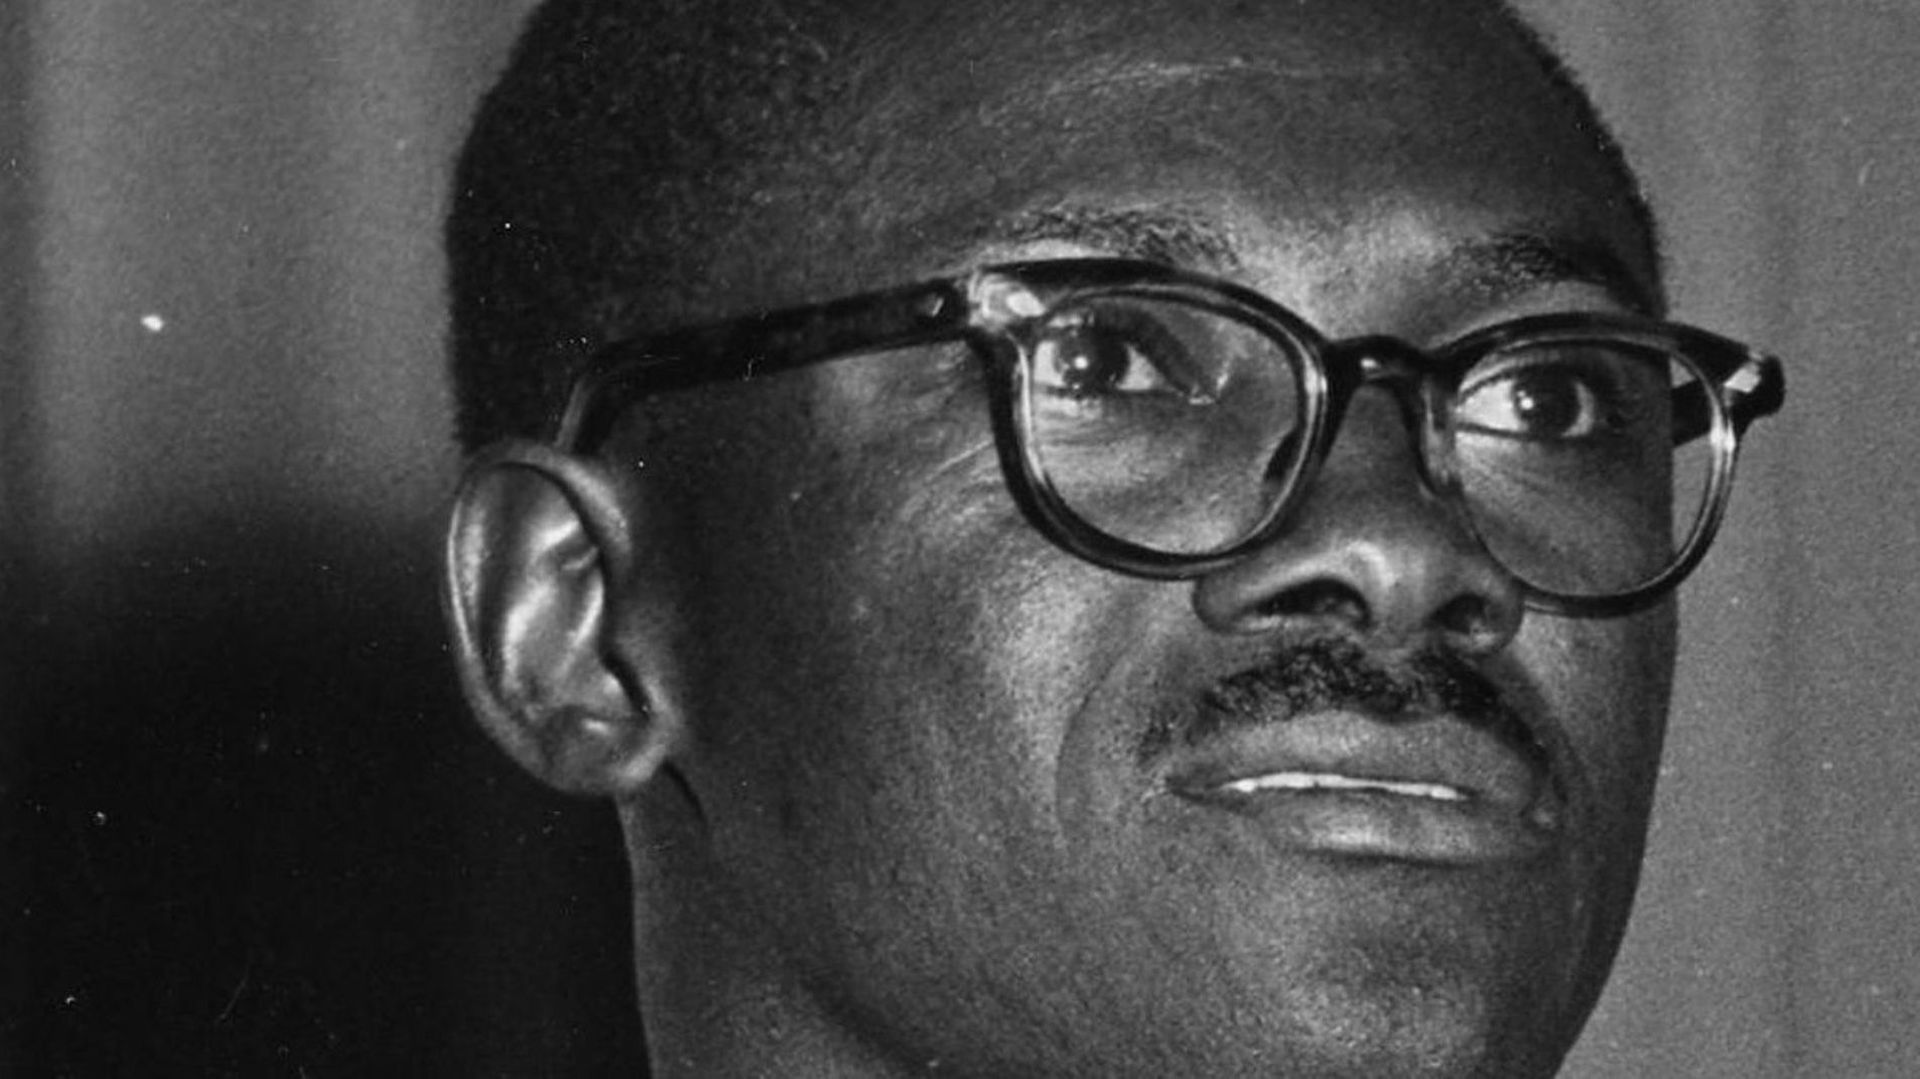 Patrice Lumumba, Premier ministre du Congo, assassiné le 17 janvier 1961 au Katanga en sécession.